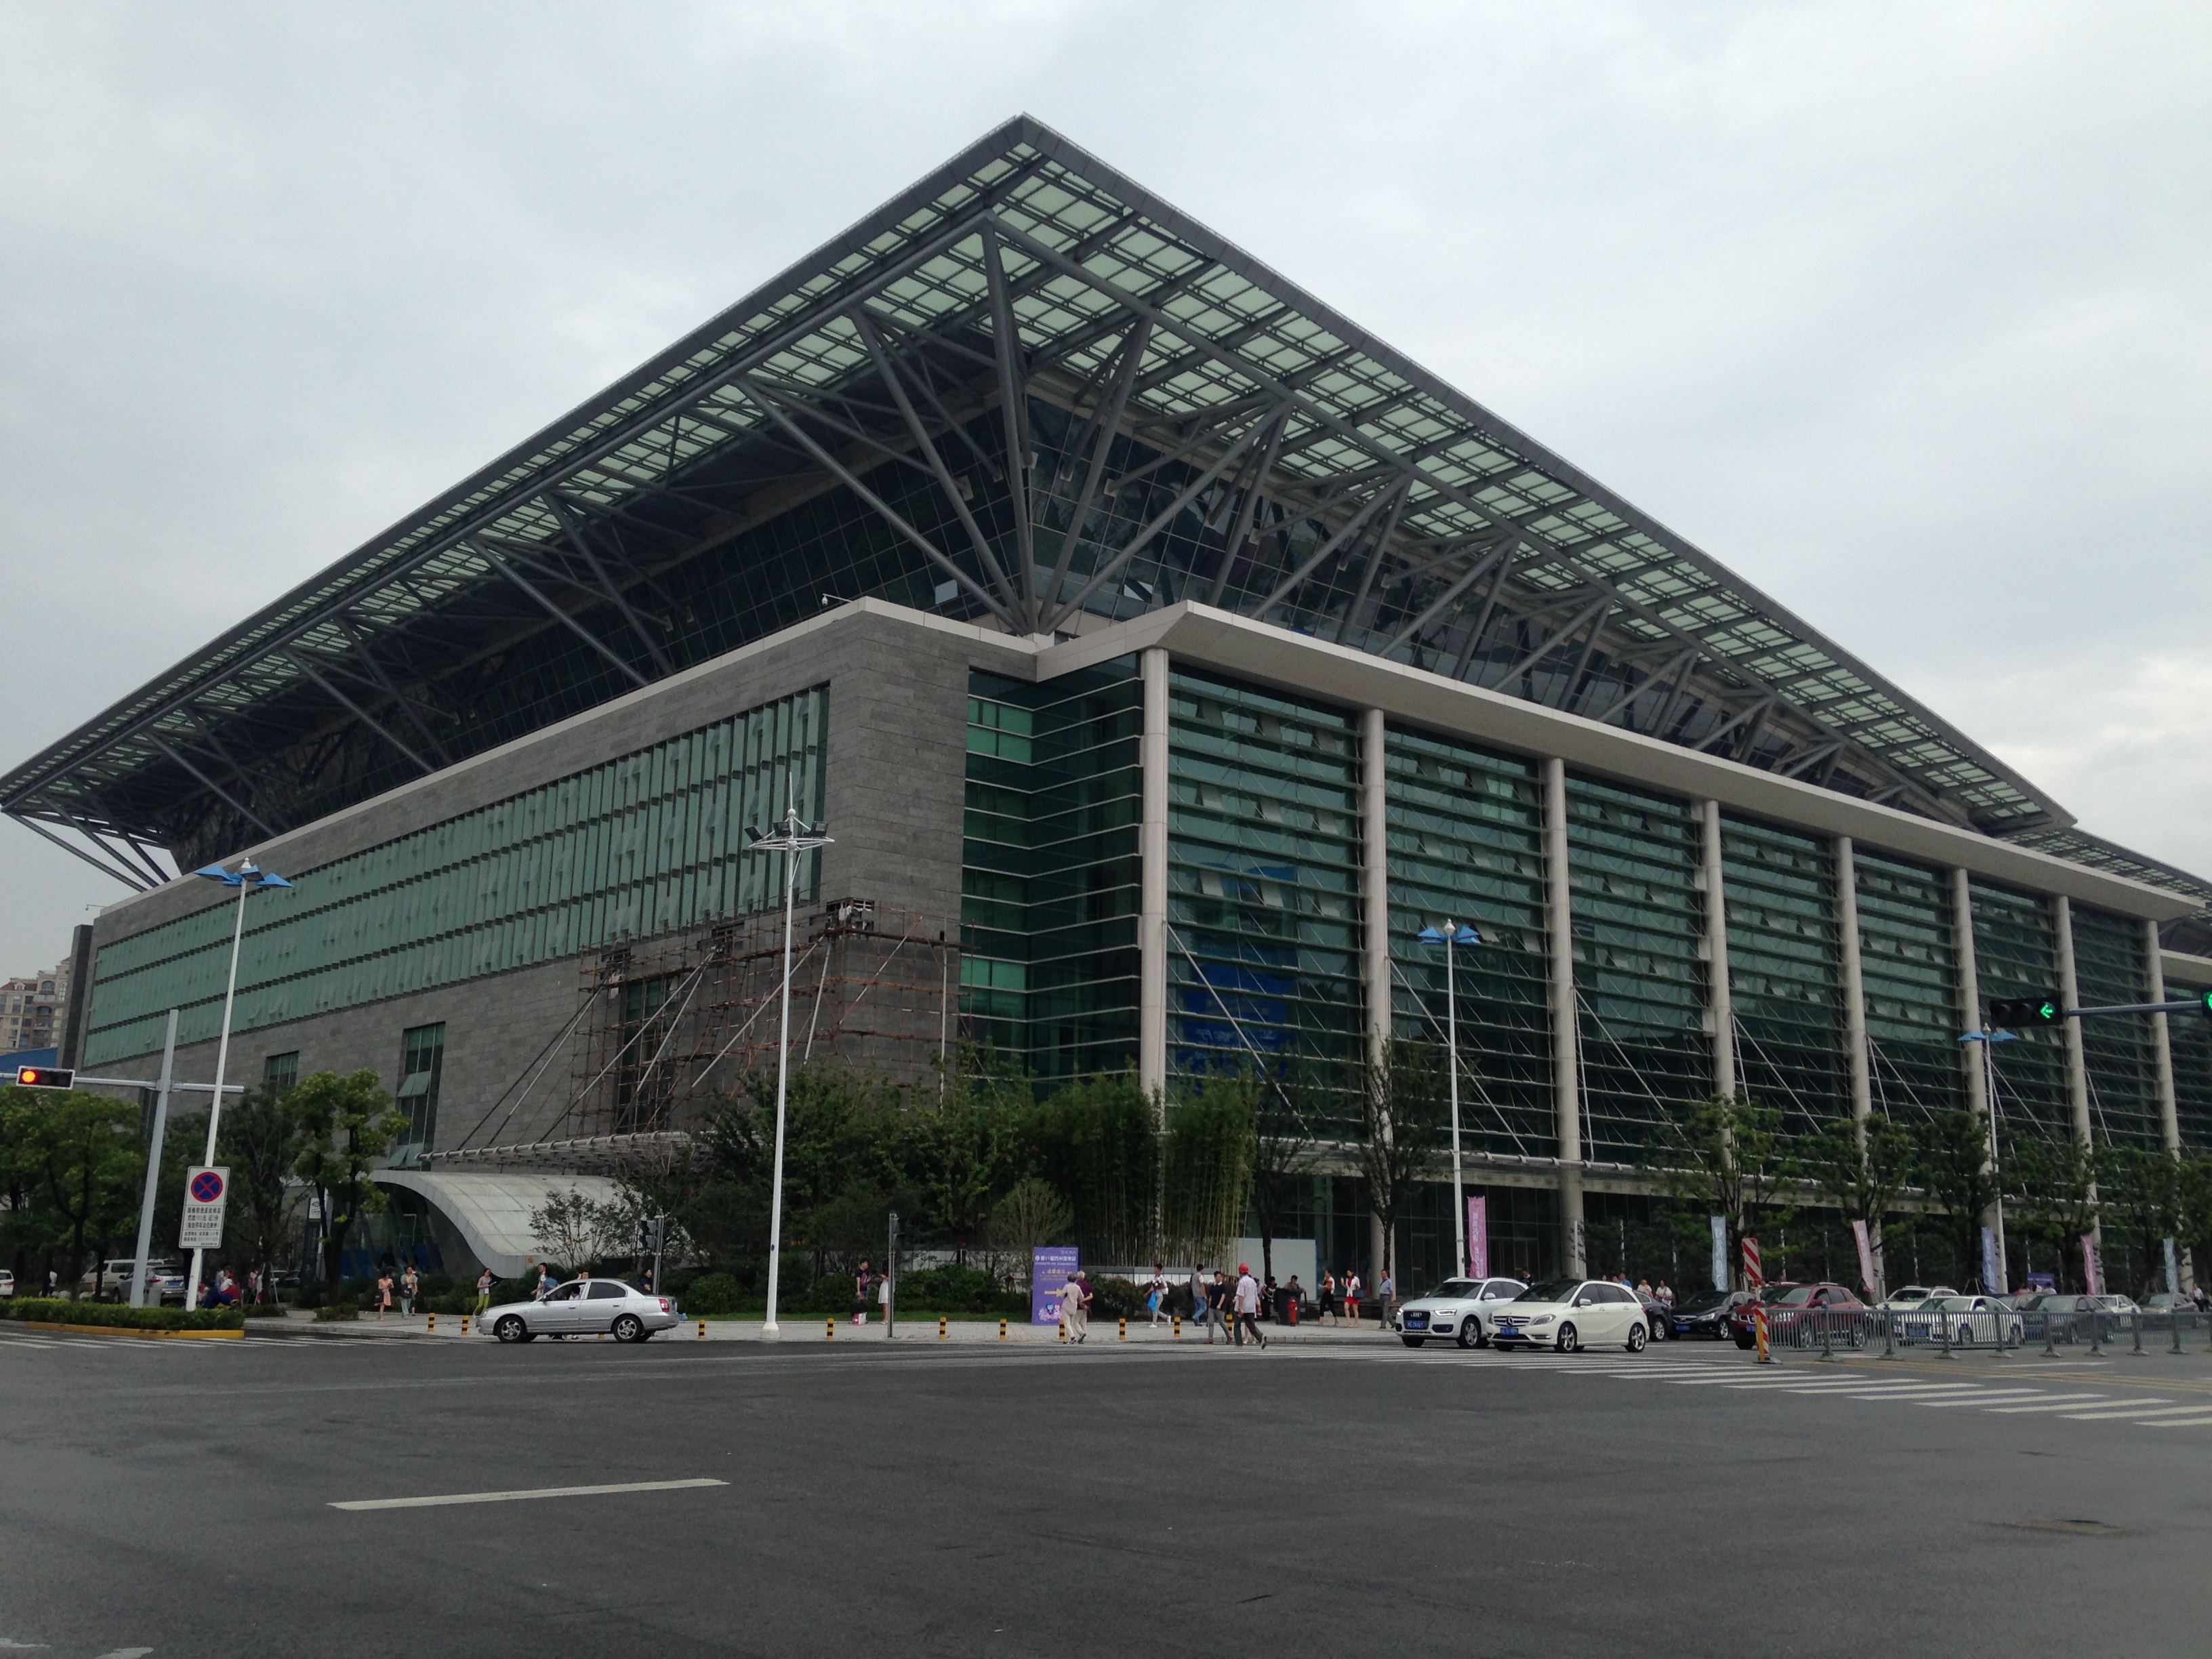 Venue of Suzhou International Expo Center